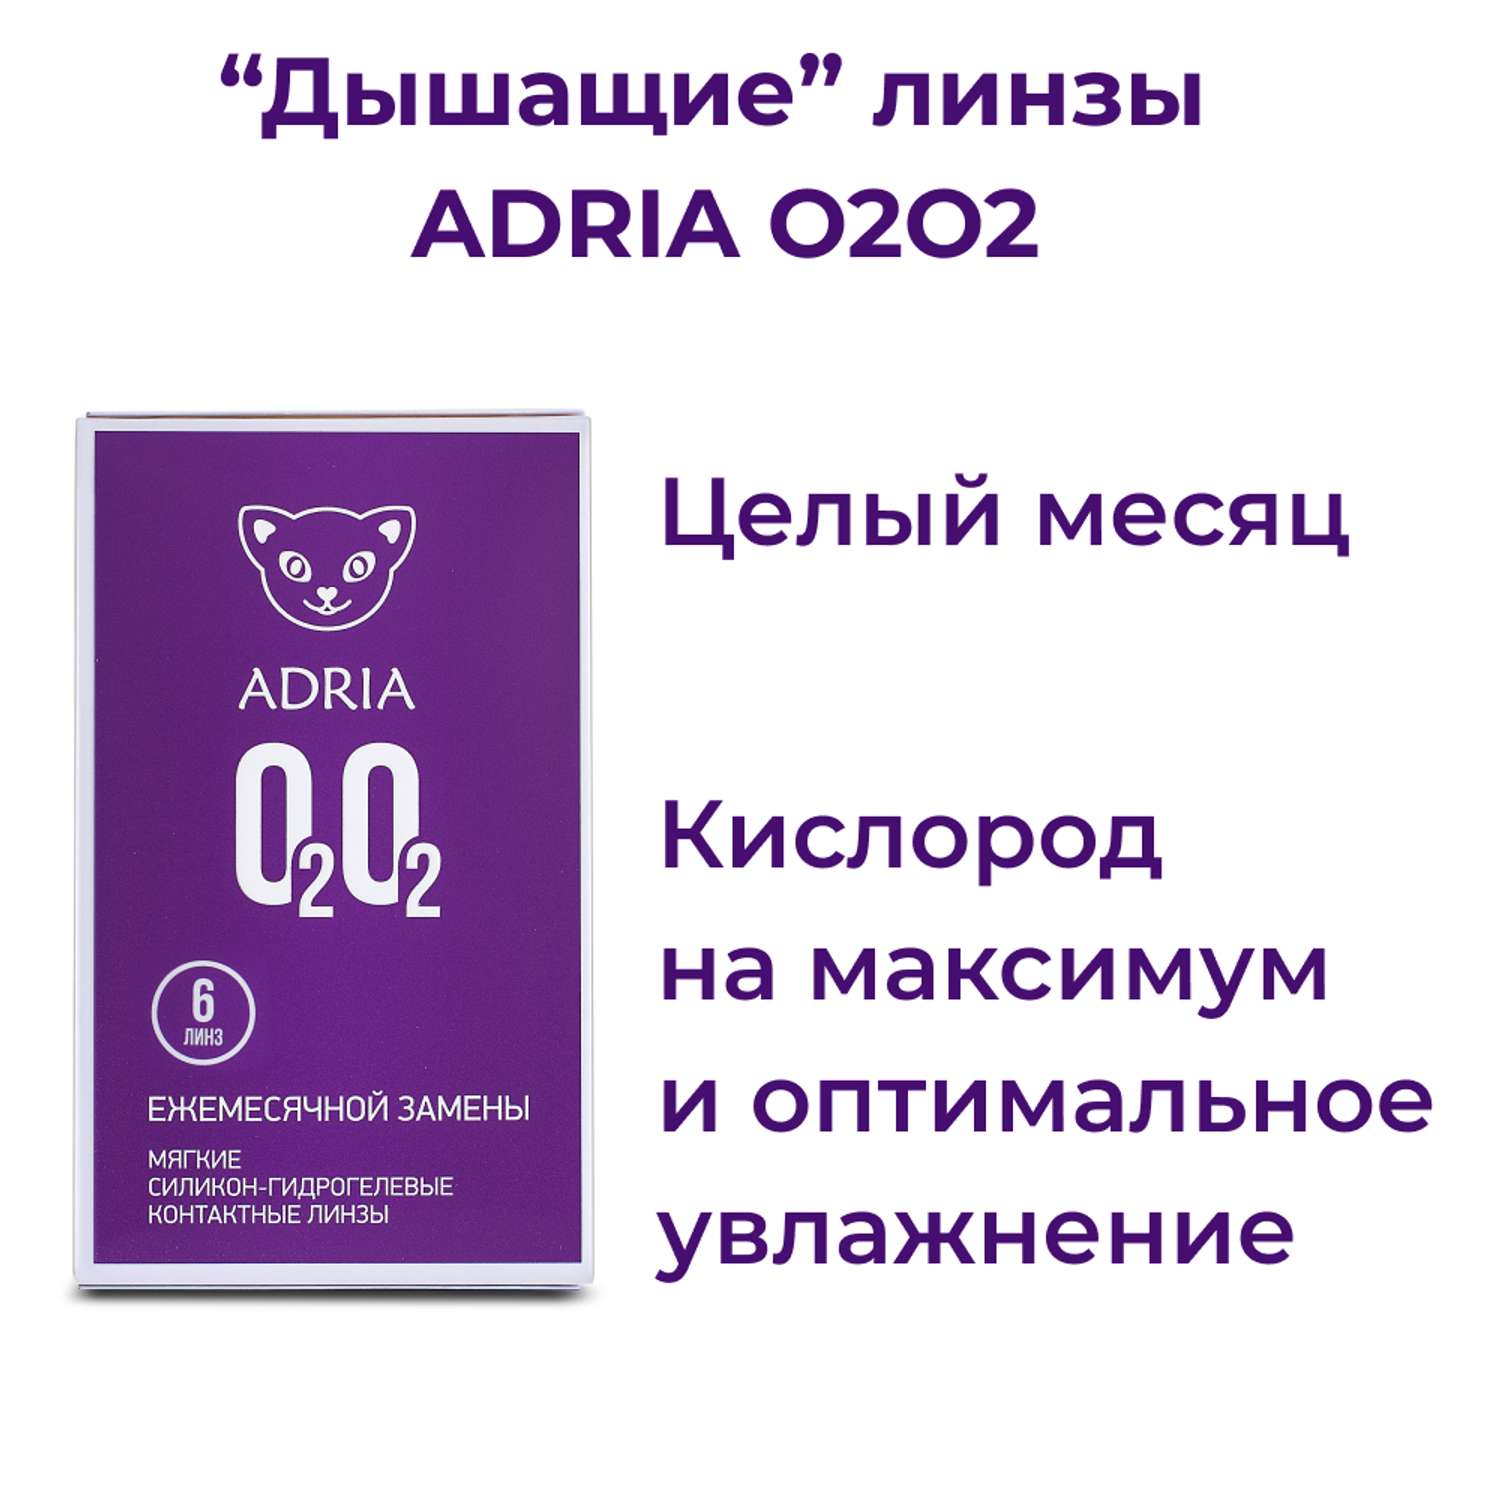 Контактные линзы ADRIA O2O2 6 линз R 8.6 -4.25 - фото 2